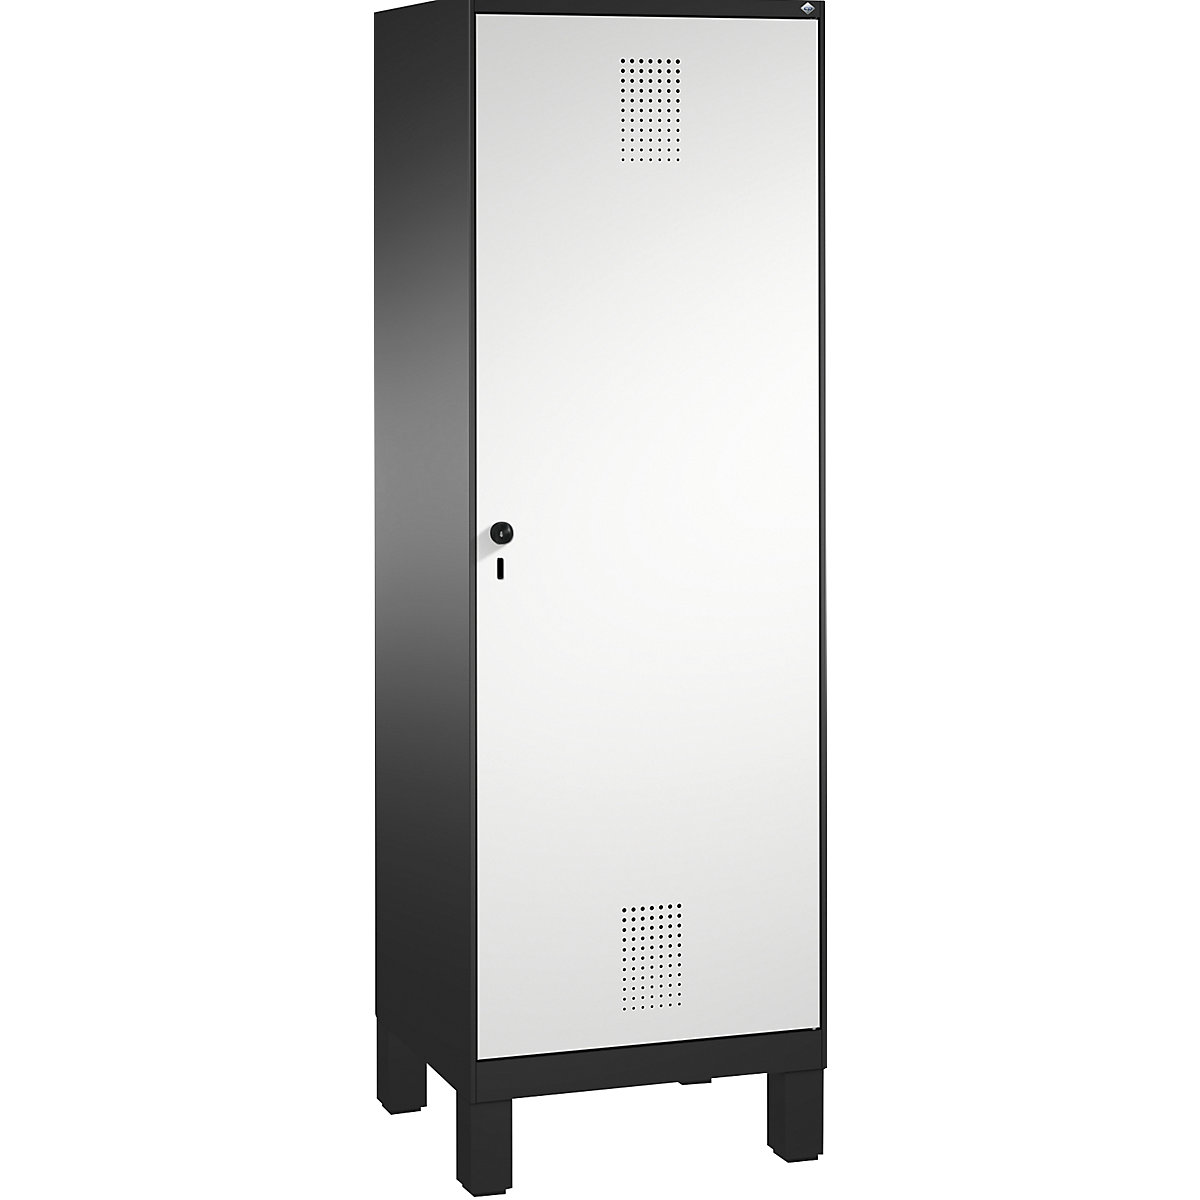 Šatní skříň s nohami EVOLO s dveřmi přes 2 oddíly – C+P, 2 oddíly, 1 dveře, šířka oddílu 300 mm, černošedá / světlá šedá-16